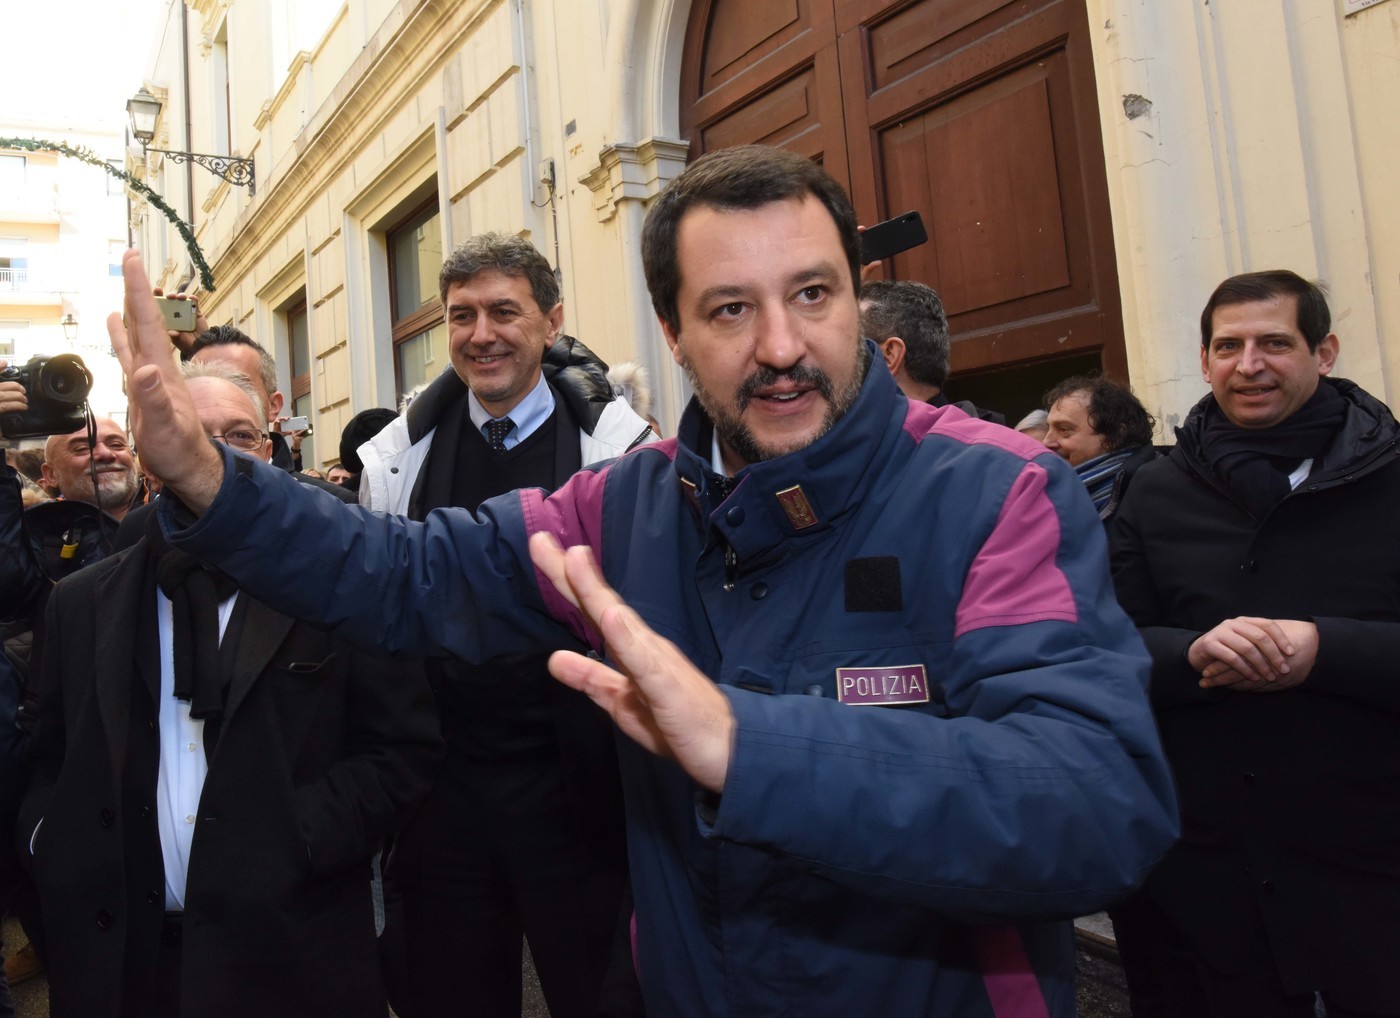 Migranti, Salvini: “Comando io. Porti chiusi”. Di Maio: “No, decide il governo”. Appello del Papa ai leader europei